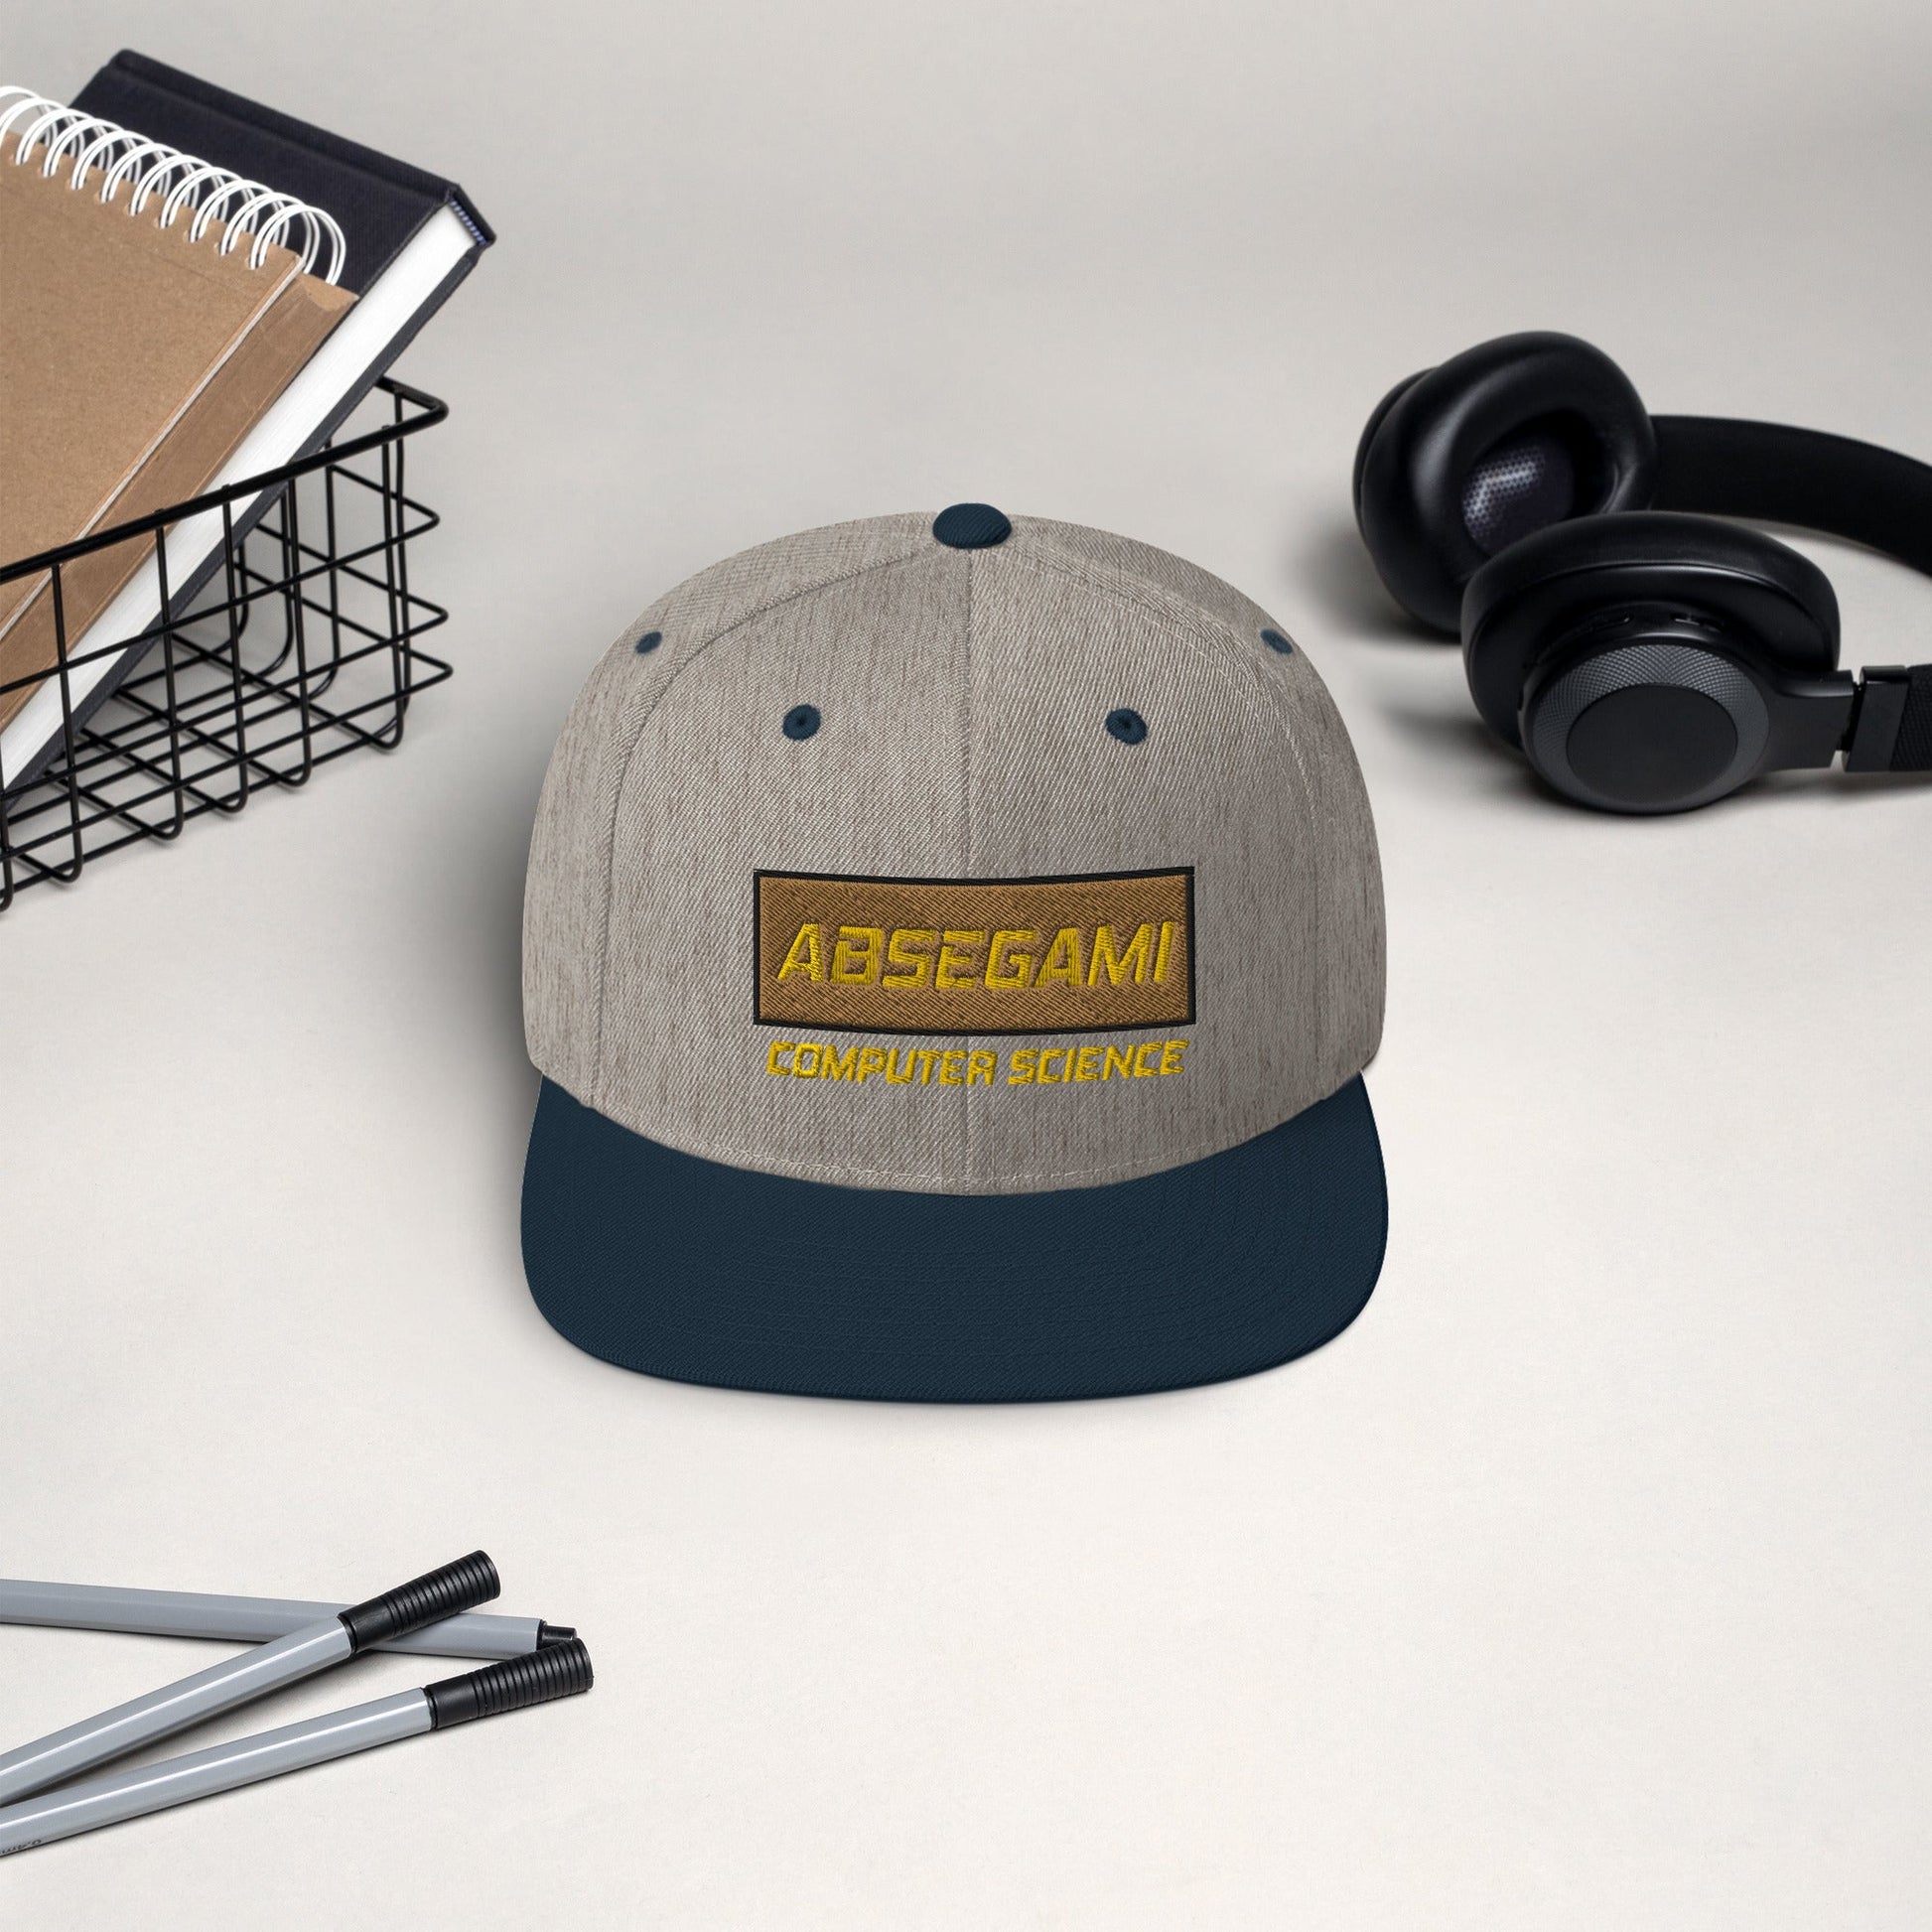 Absegami CompSci Snapback Hat